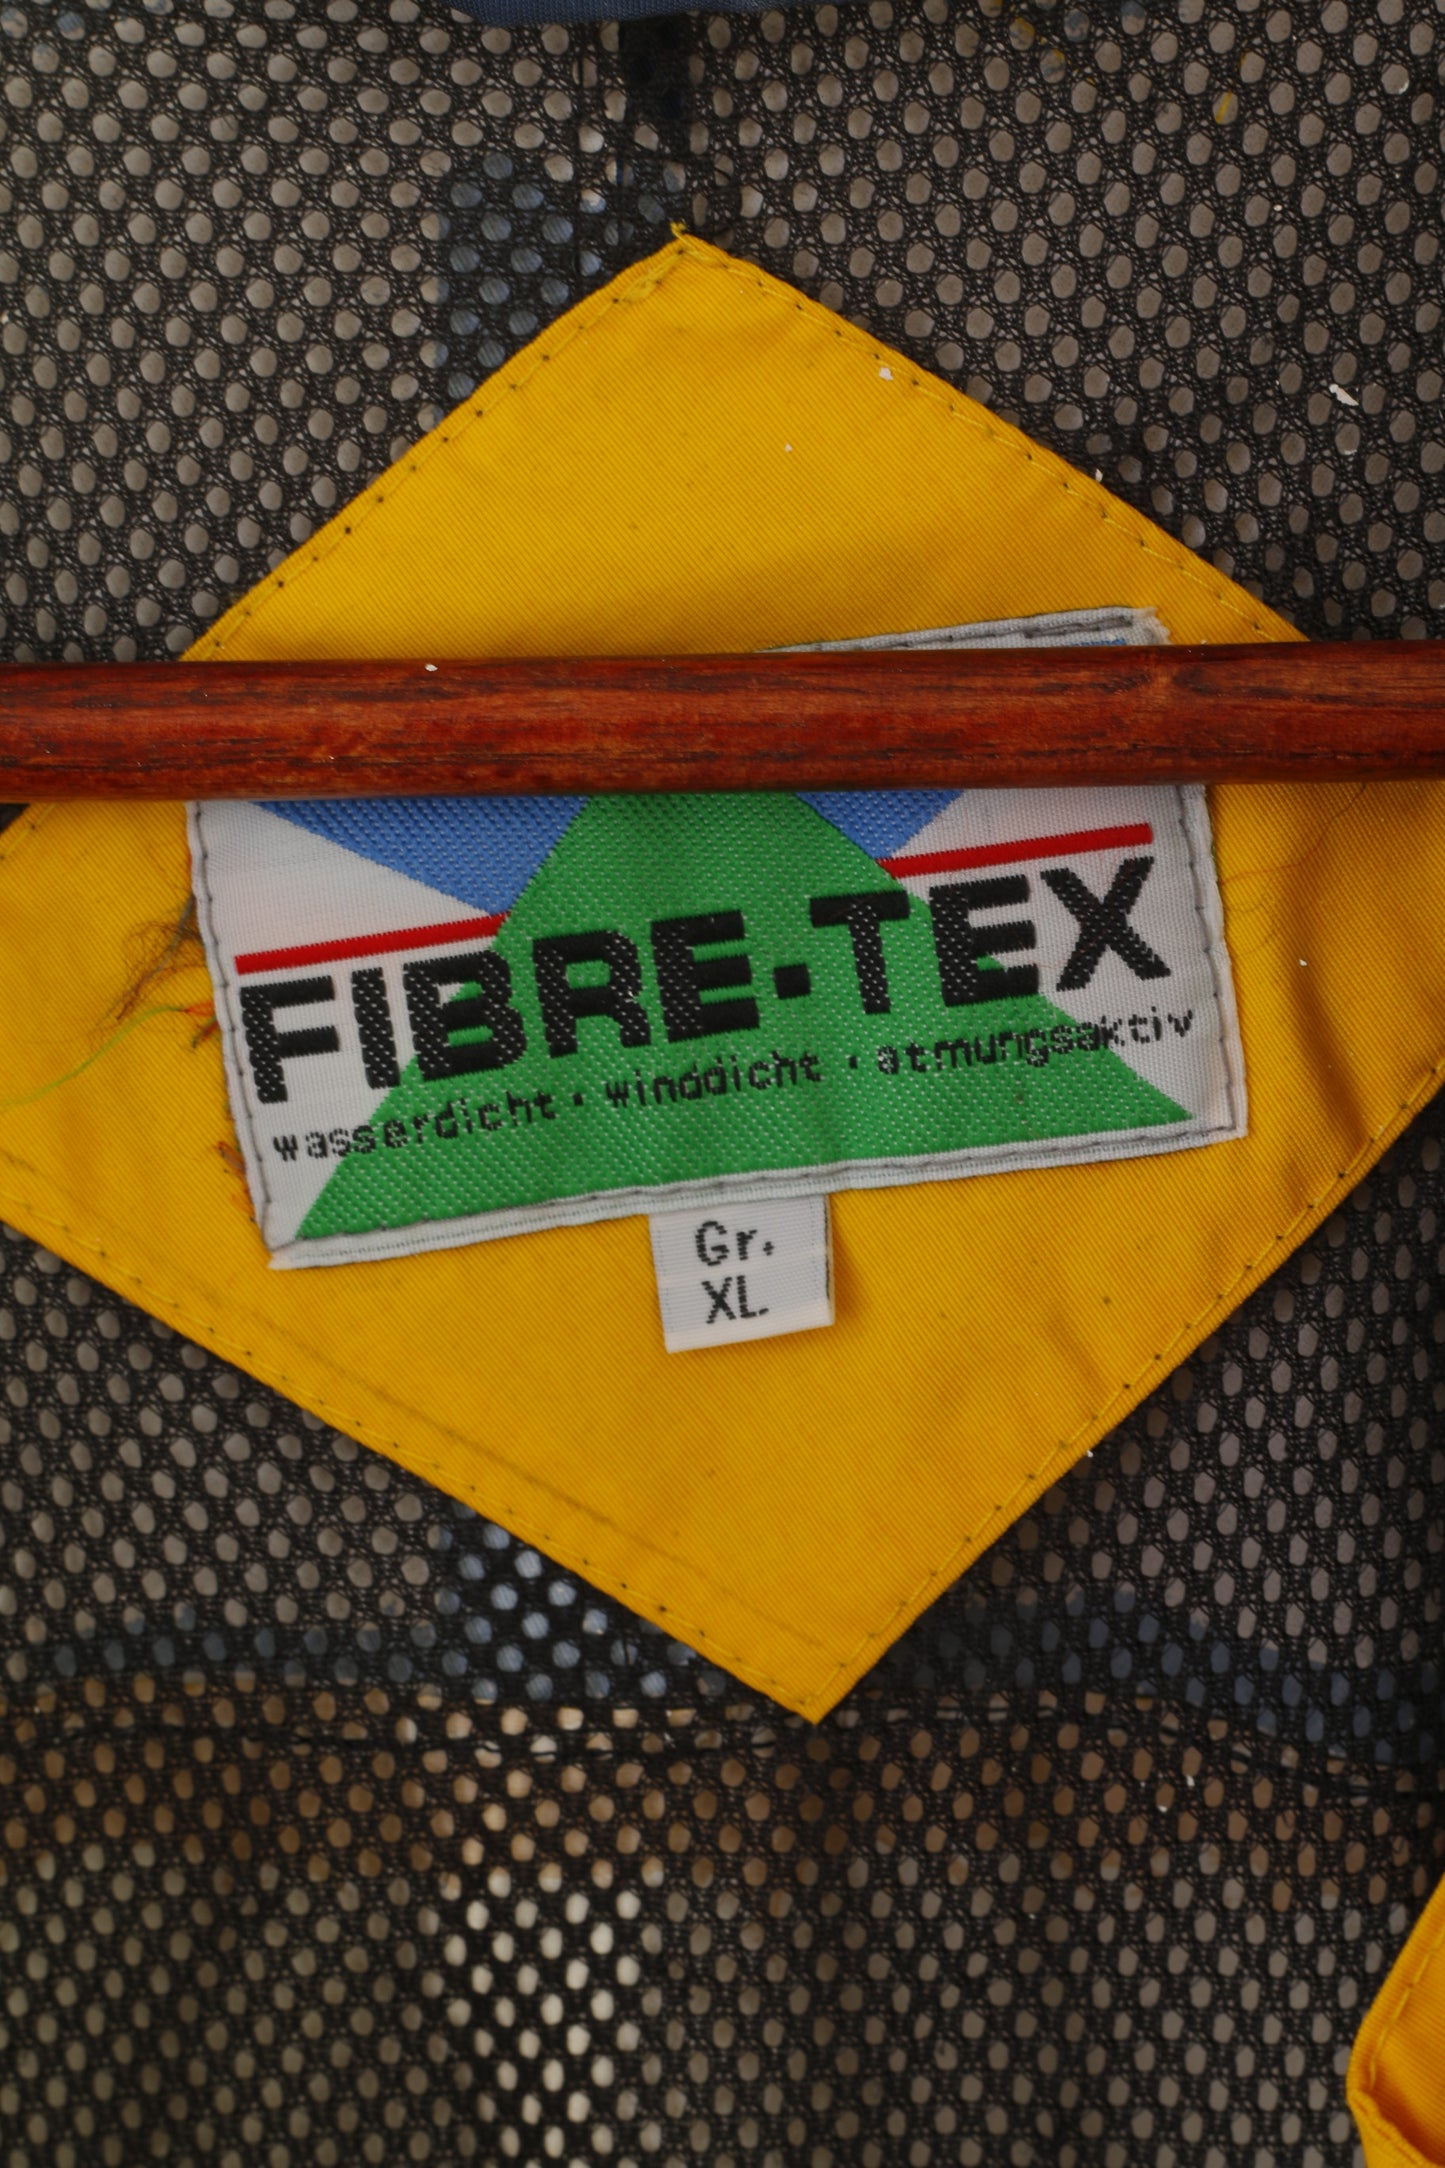 Giacca Fiber-Tex da uomo XL gialla vintage outdoor nylon impermeabile con cappuccio